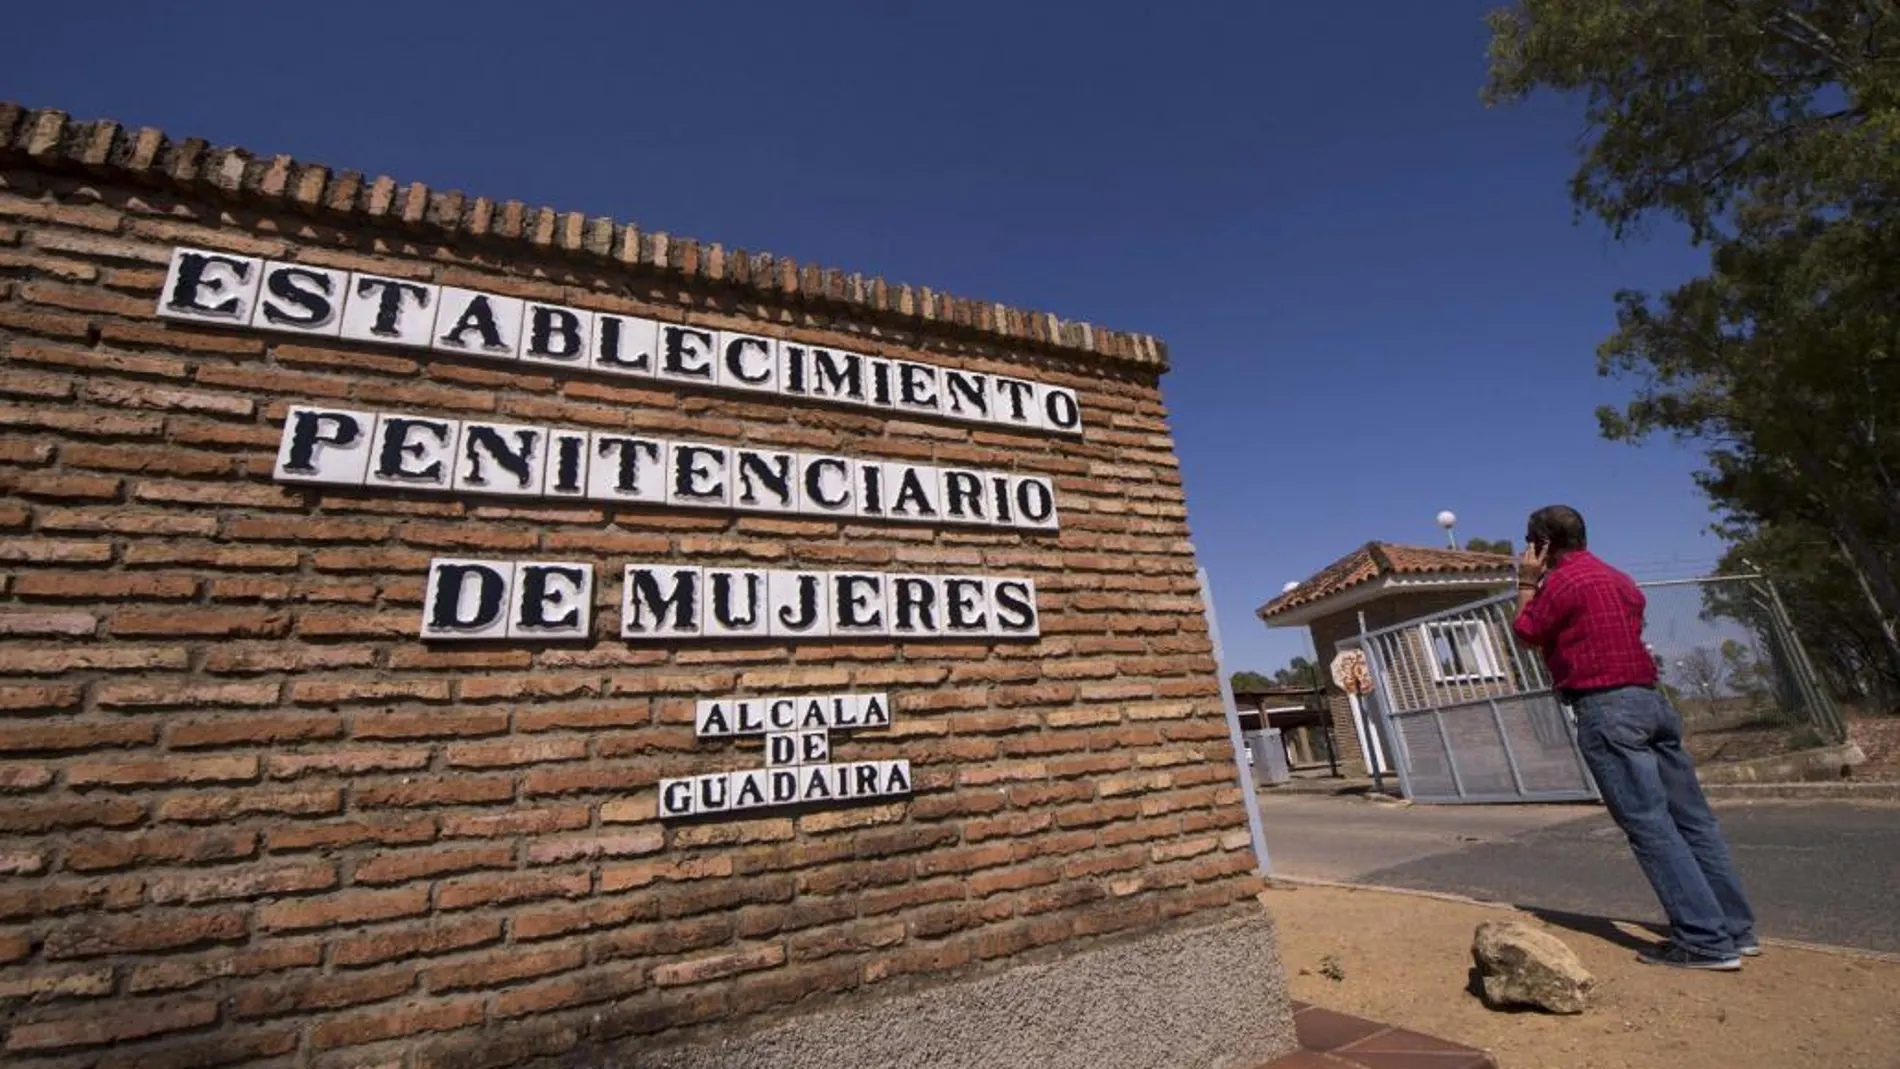 Puerta del Centro Penitenciario de mujeres de Alcalá de Guadaíra (Sevilla)